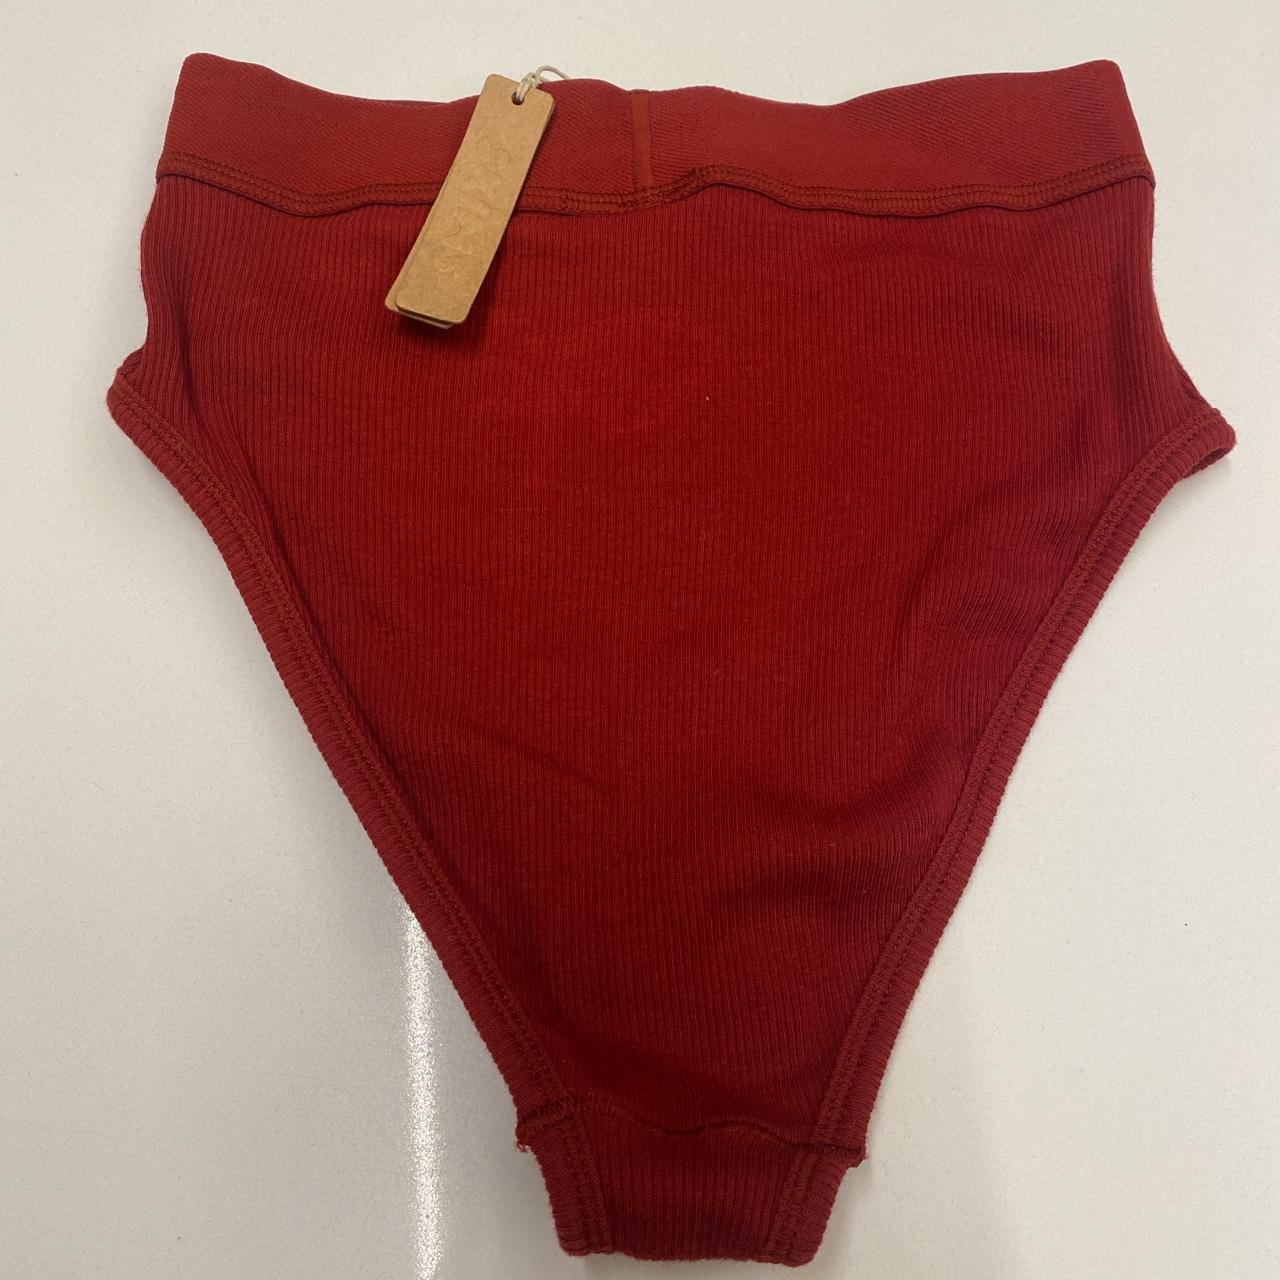 Skims underwear BRIEFS, Red undies in color red